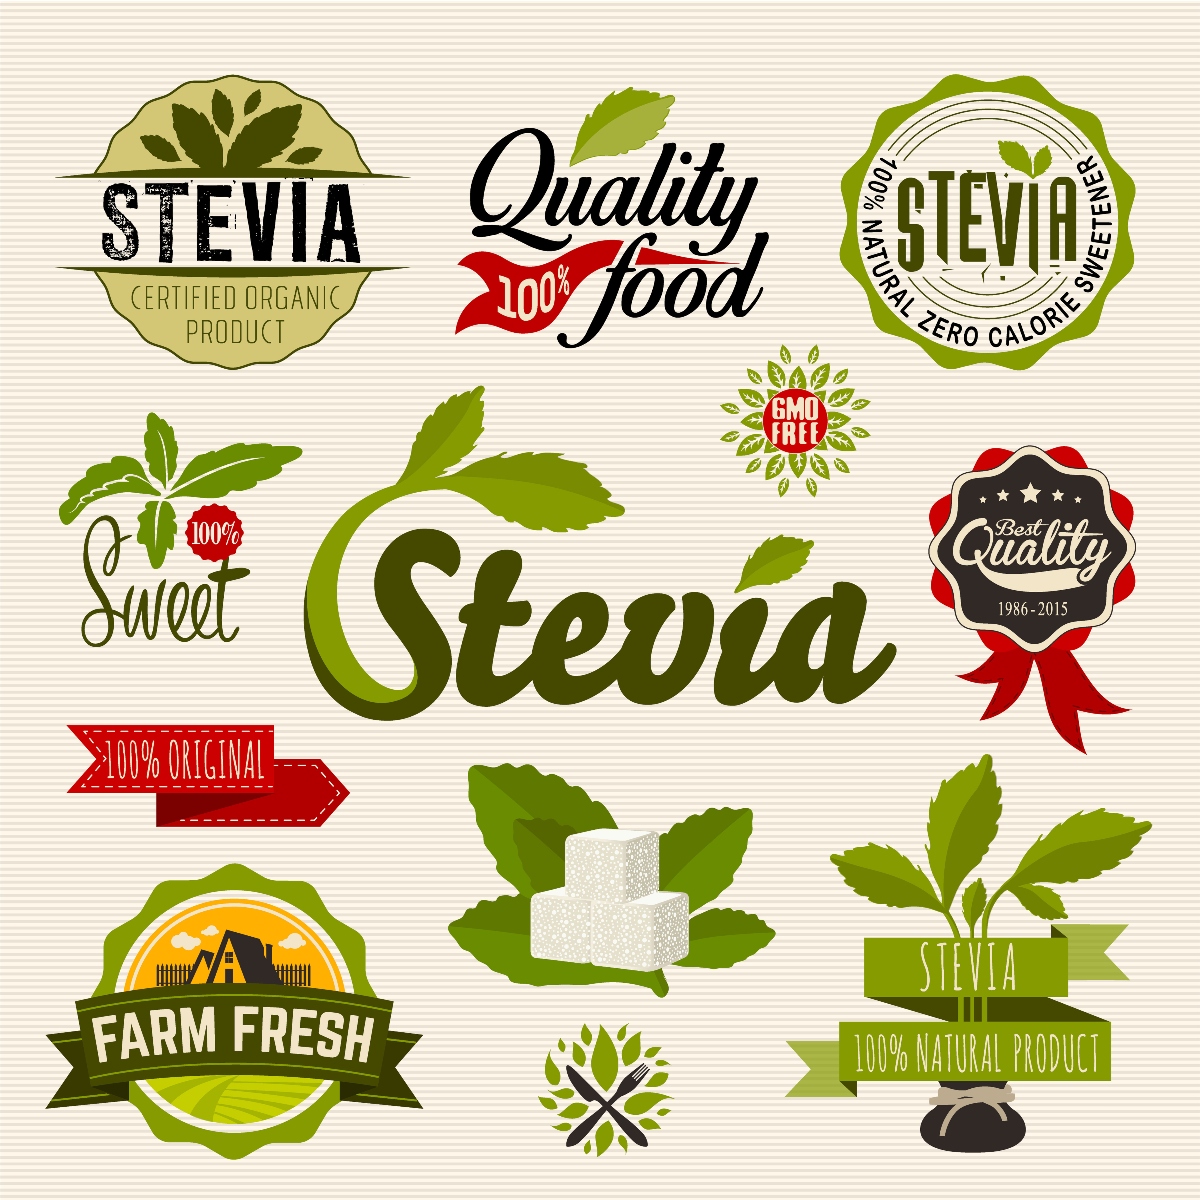 la storia della stevia 